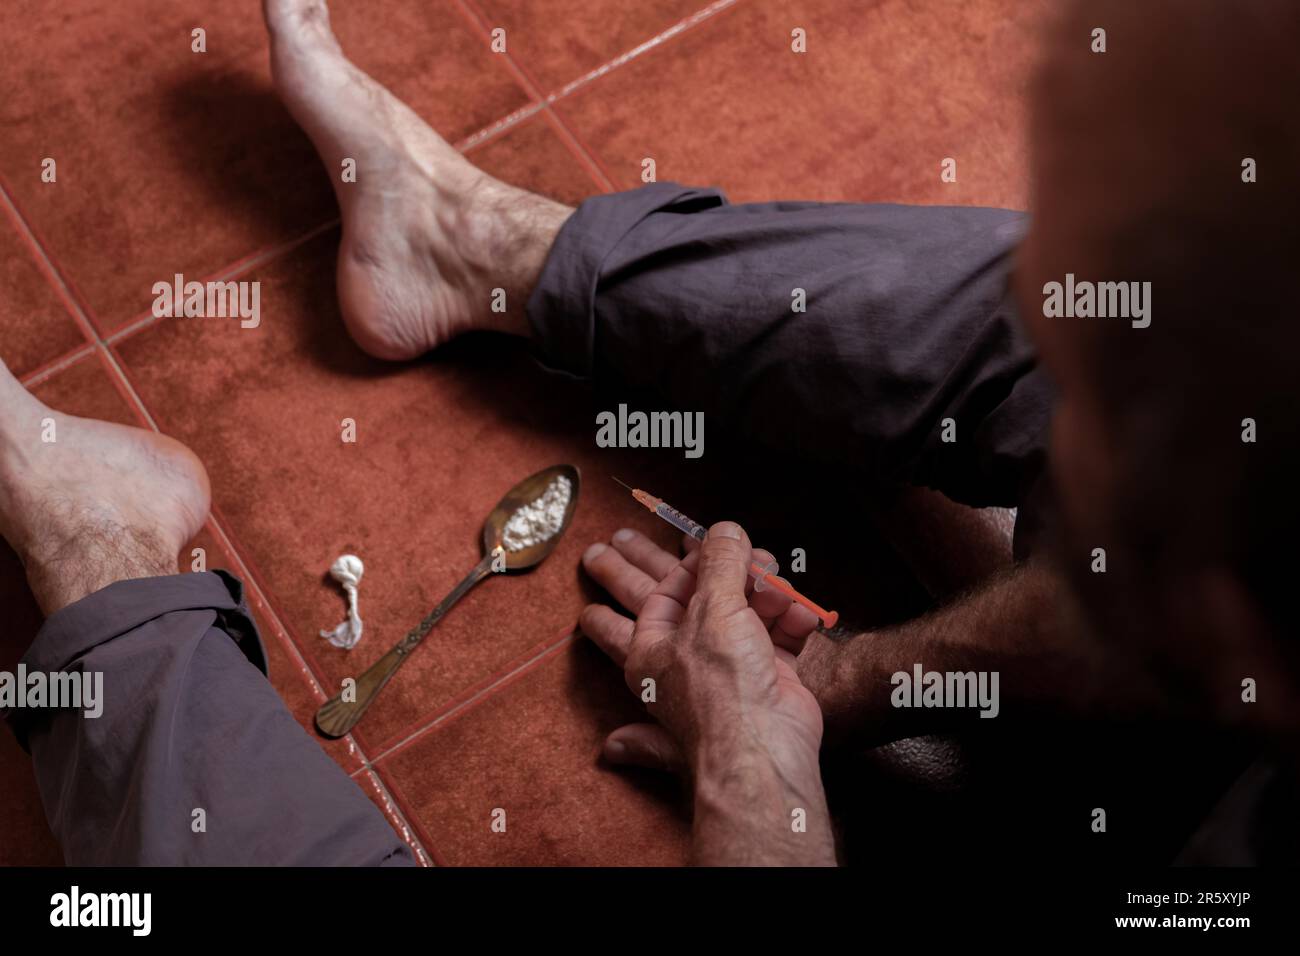 Vue de dessus d'un homme assis pieds nus sur le sol avec une seringue d'héroïne dans sa main concept de toxicomanie Banque D'Images